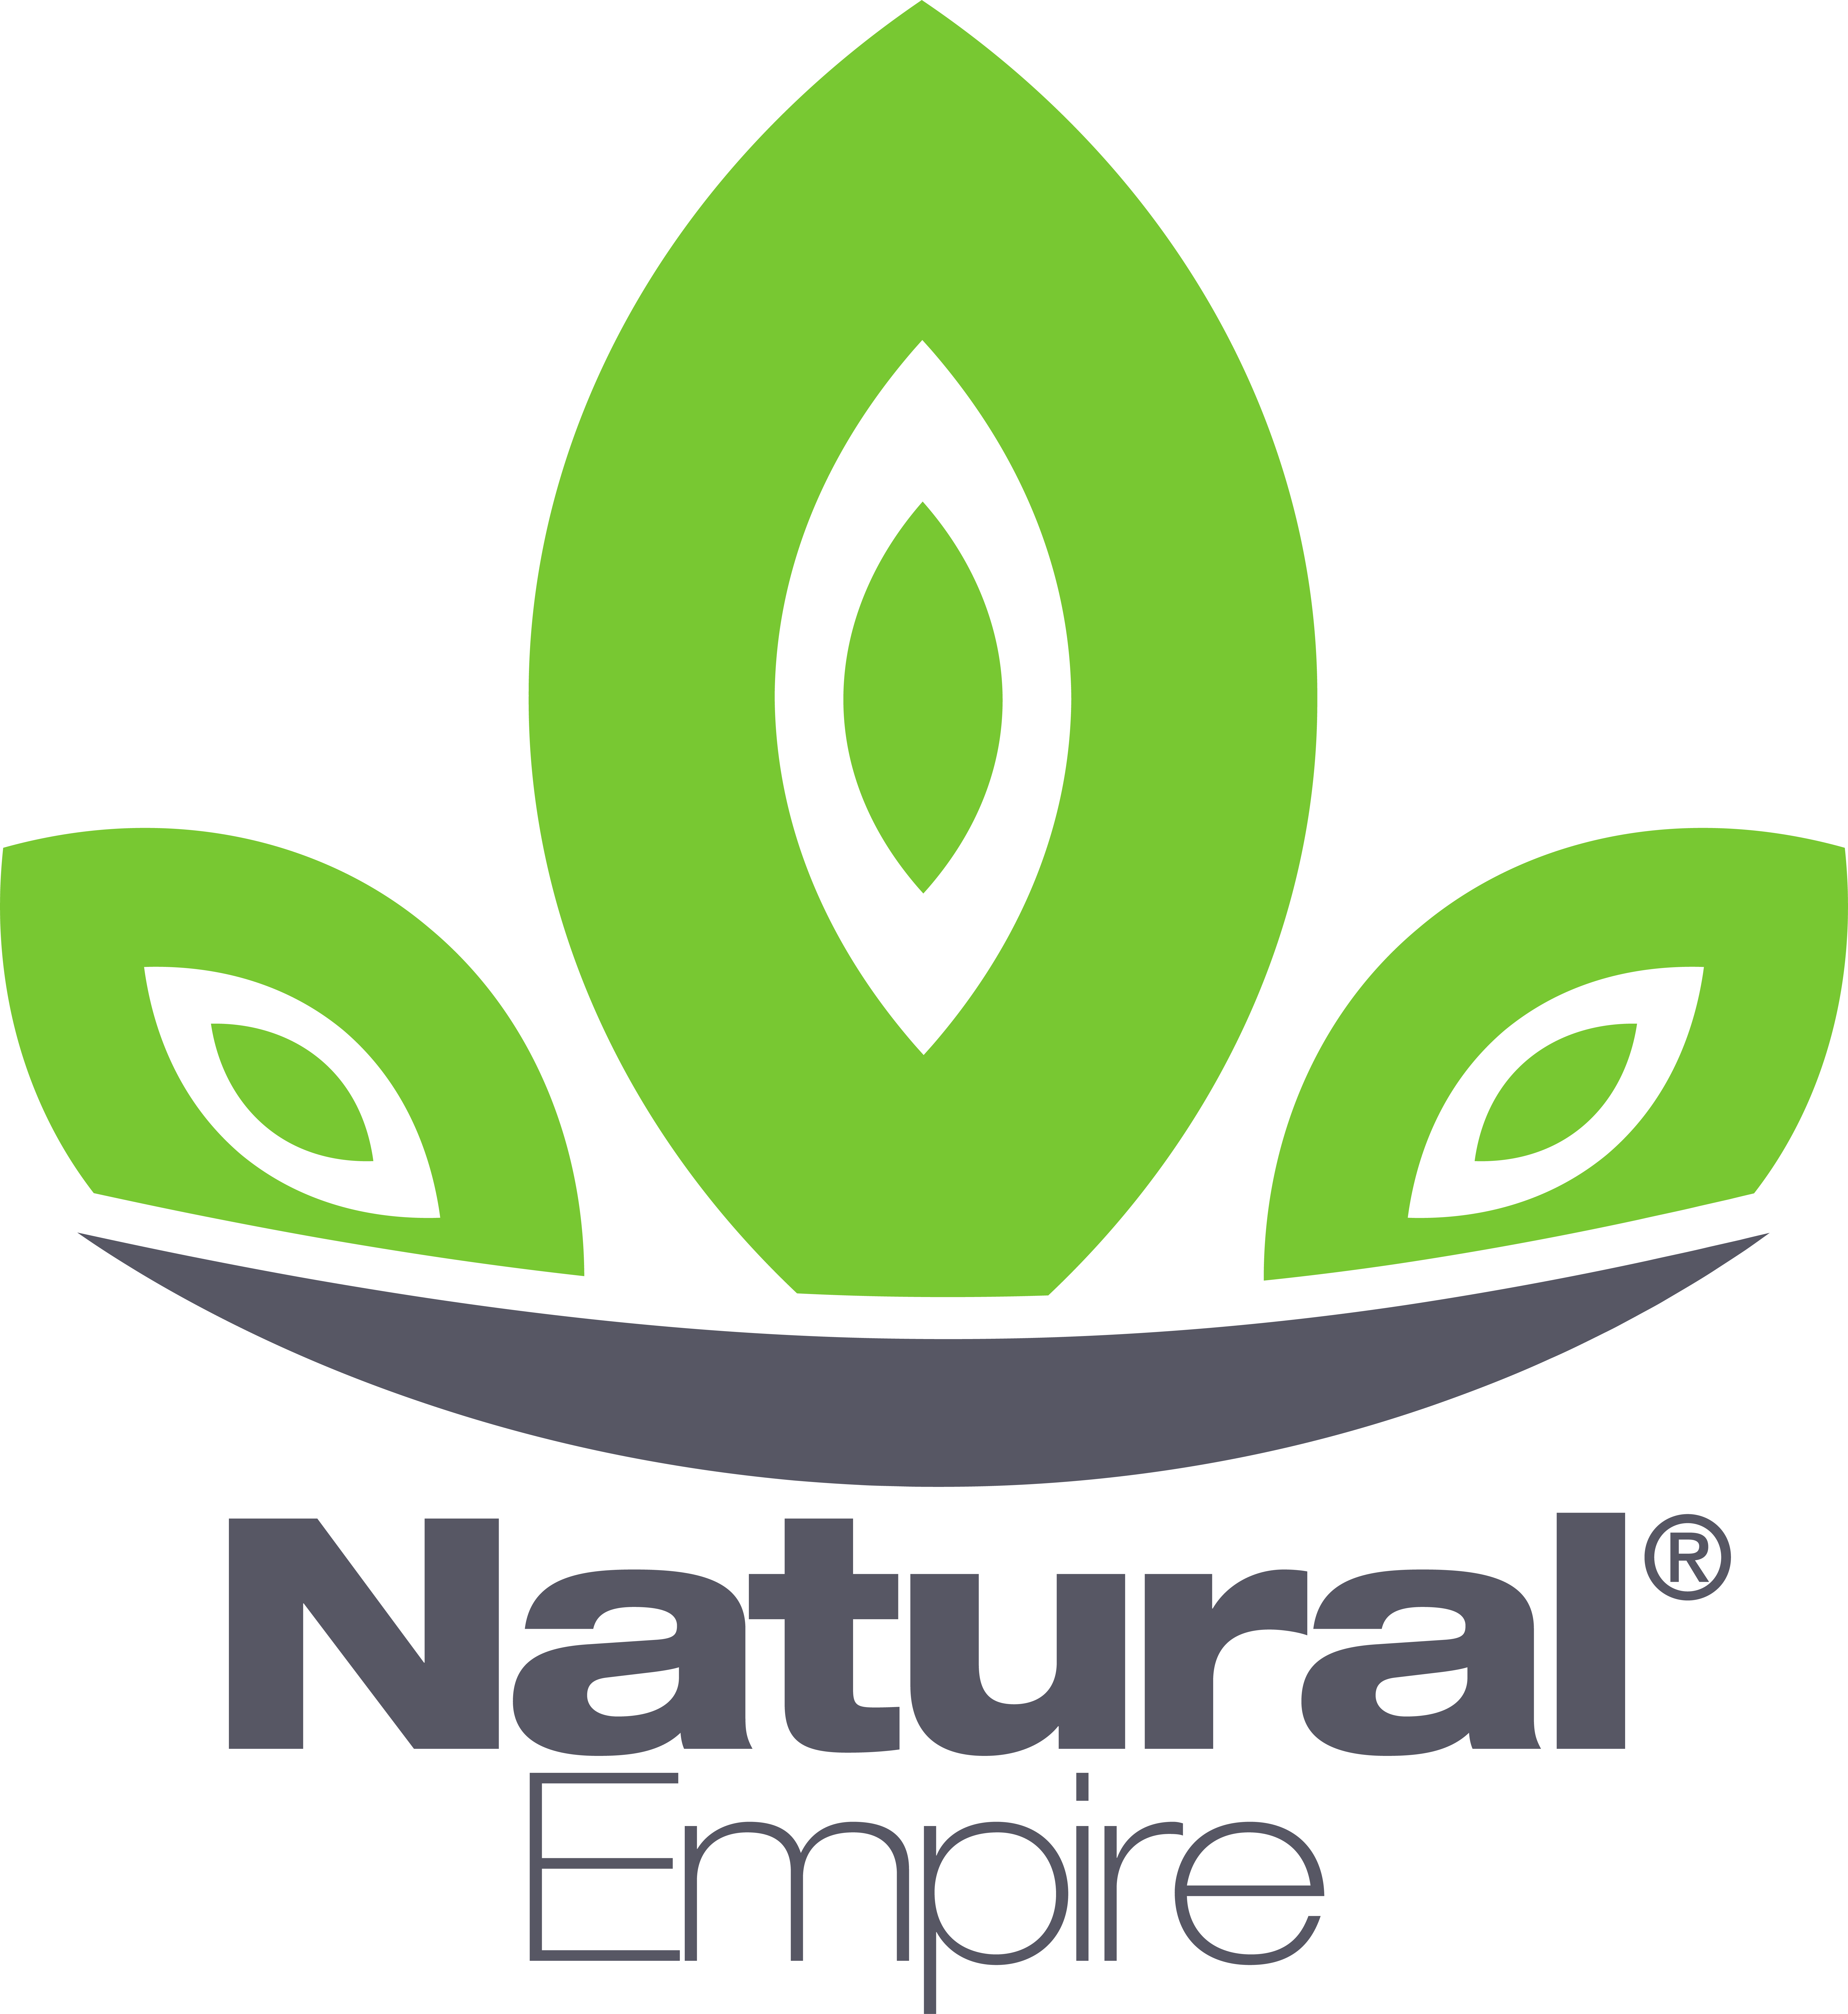 Natural Empire